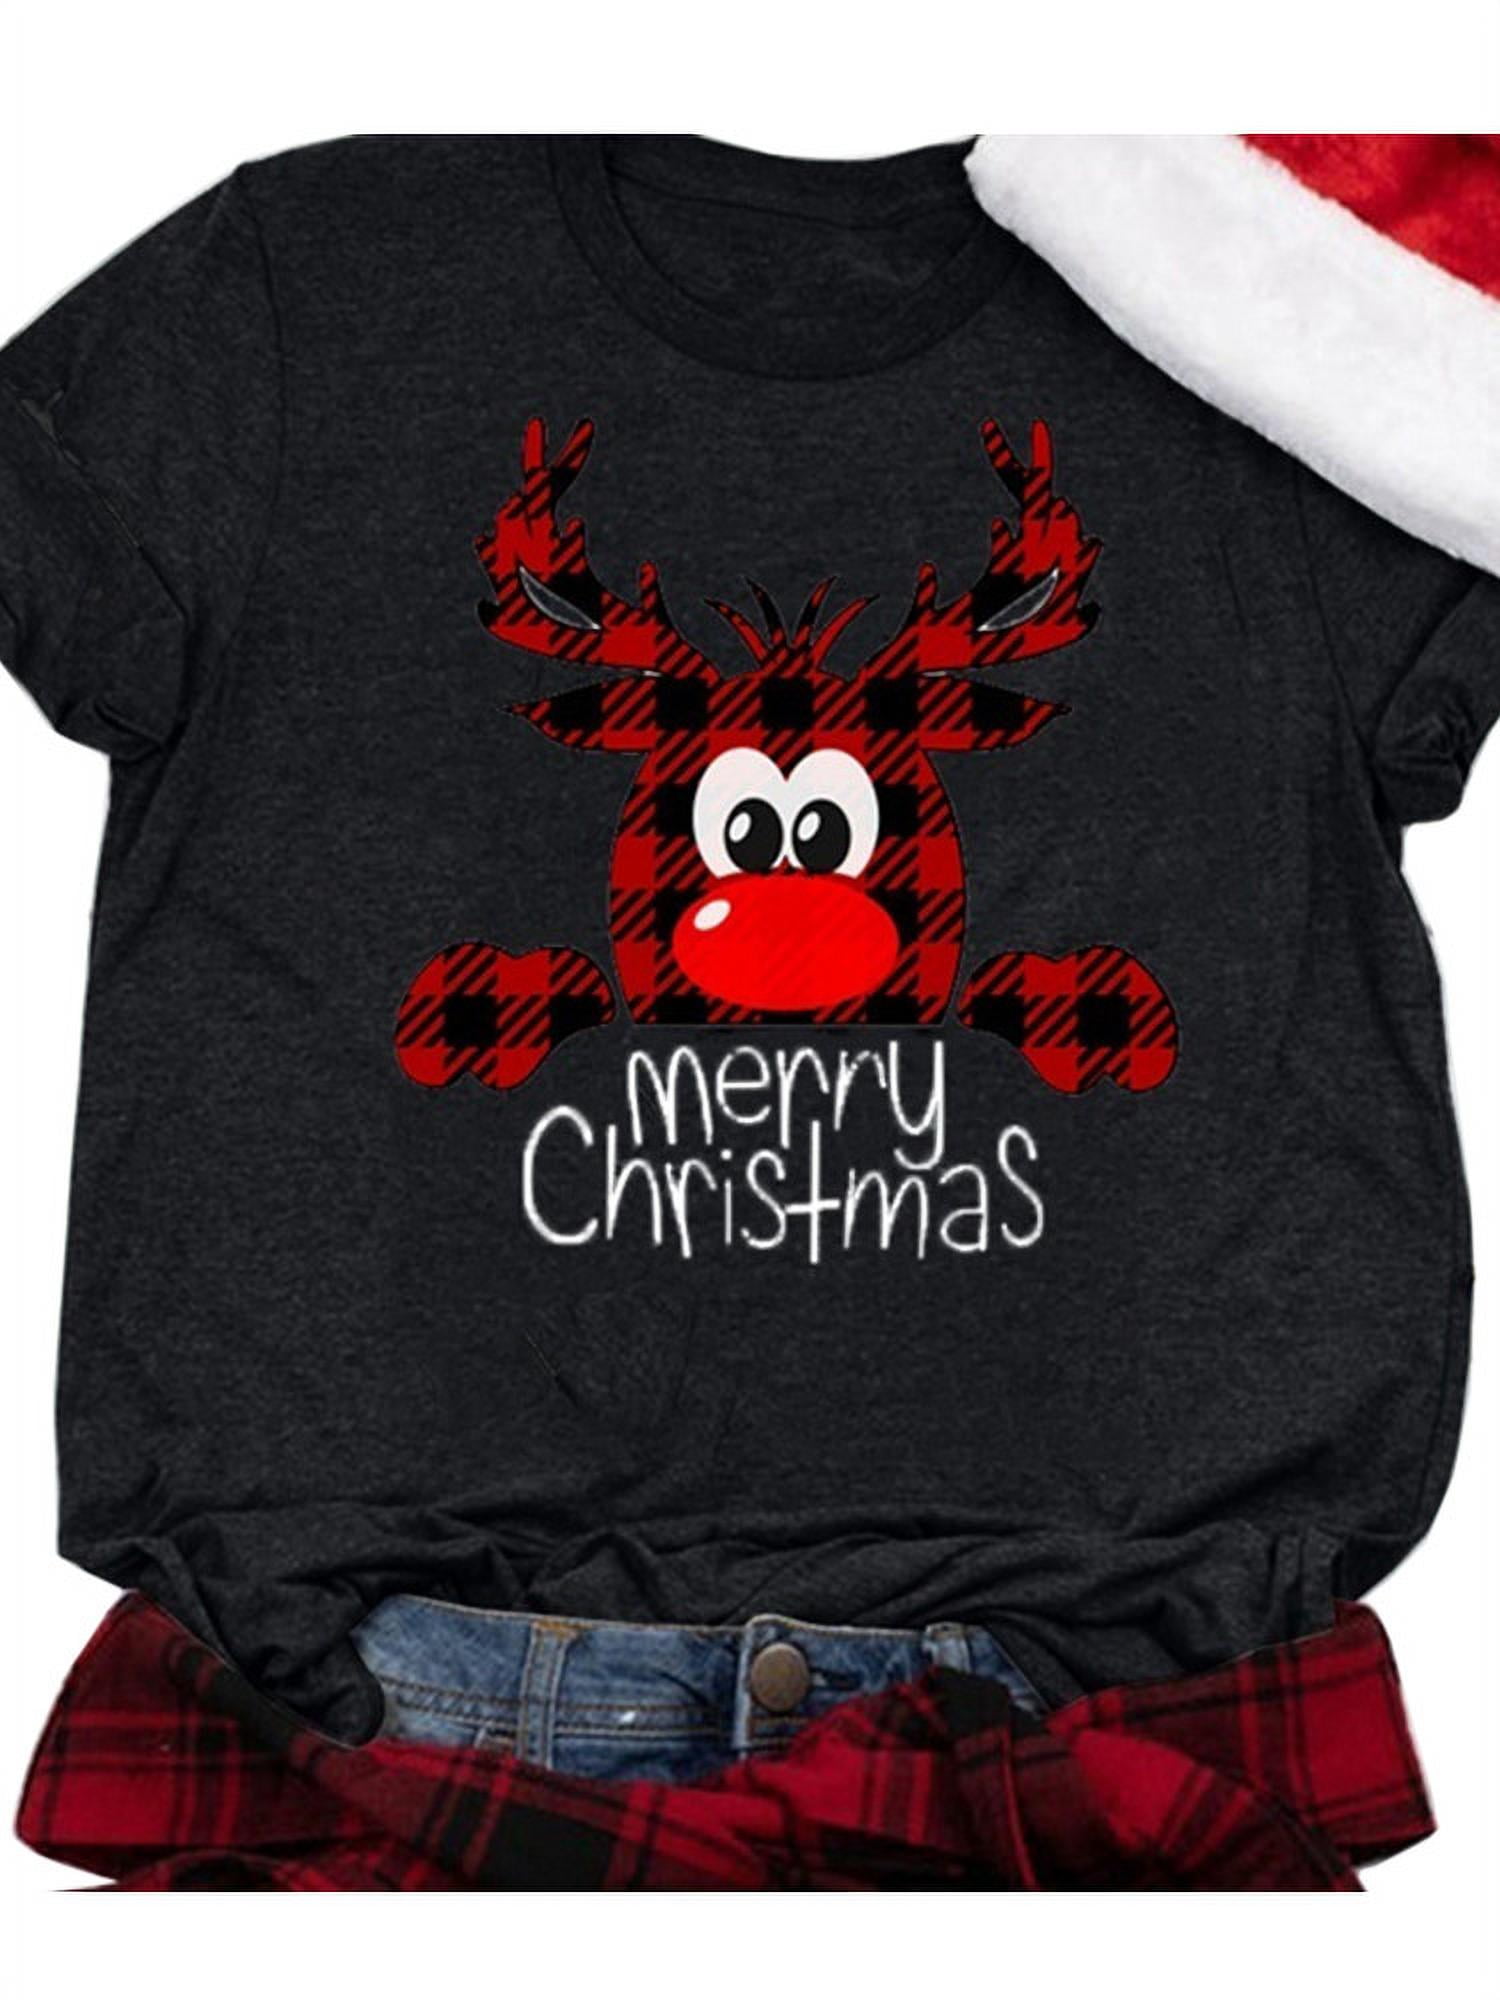 Buffalo Plaid Christmas Shirt,Merry Christmas Shirt,Christmas T-shirt,Christmas Family Shirt,Christmas Gift,Holiday Gift,Leopard Shirt